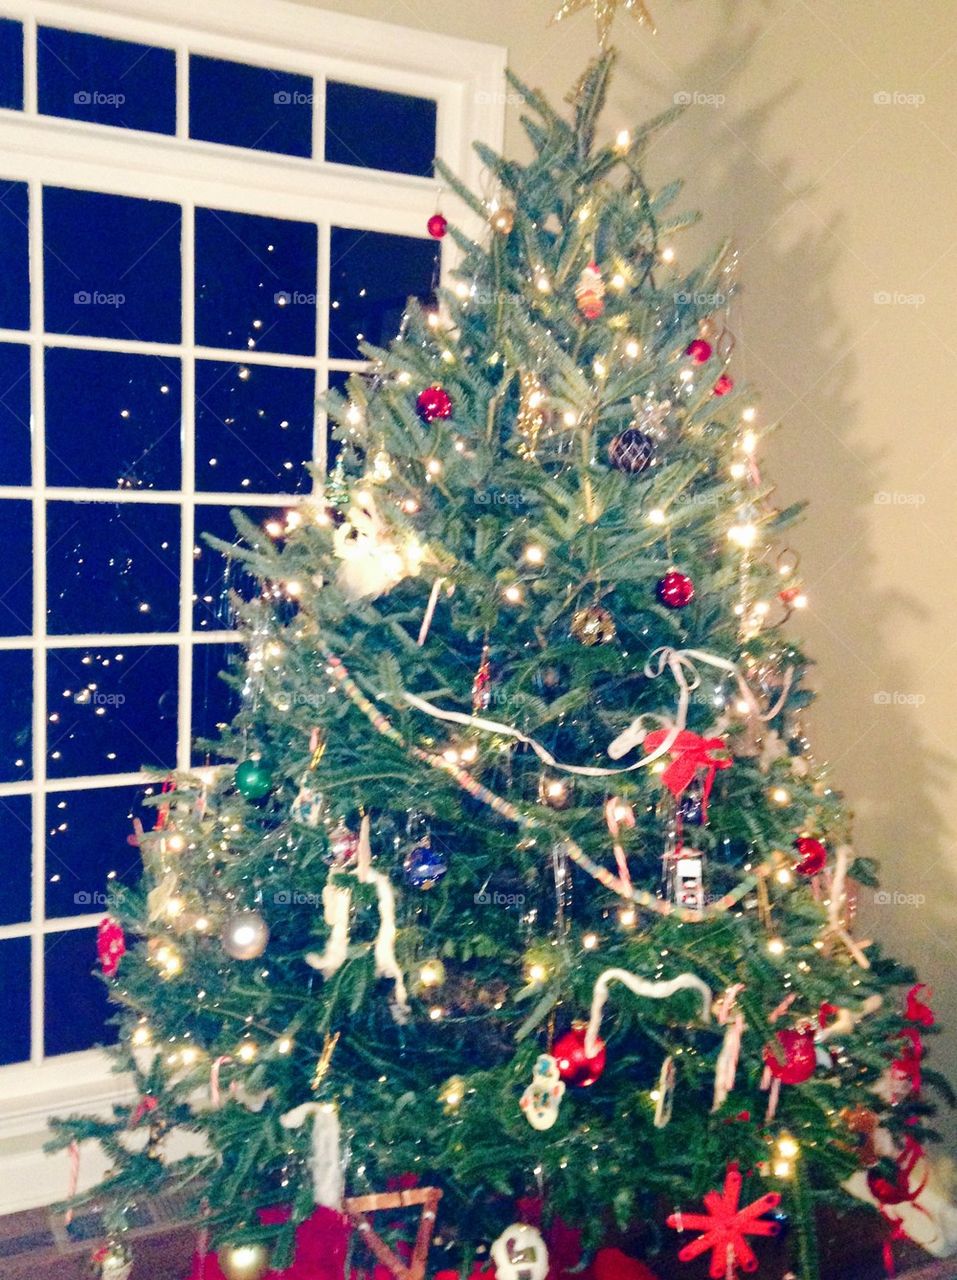 Christmas tree for me